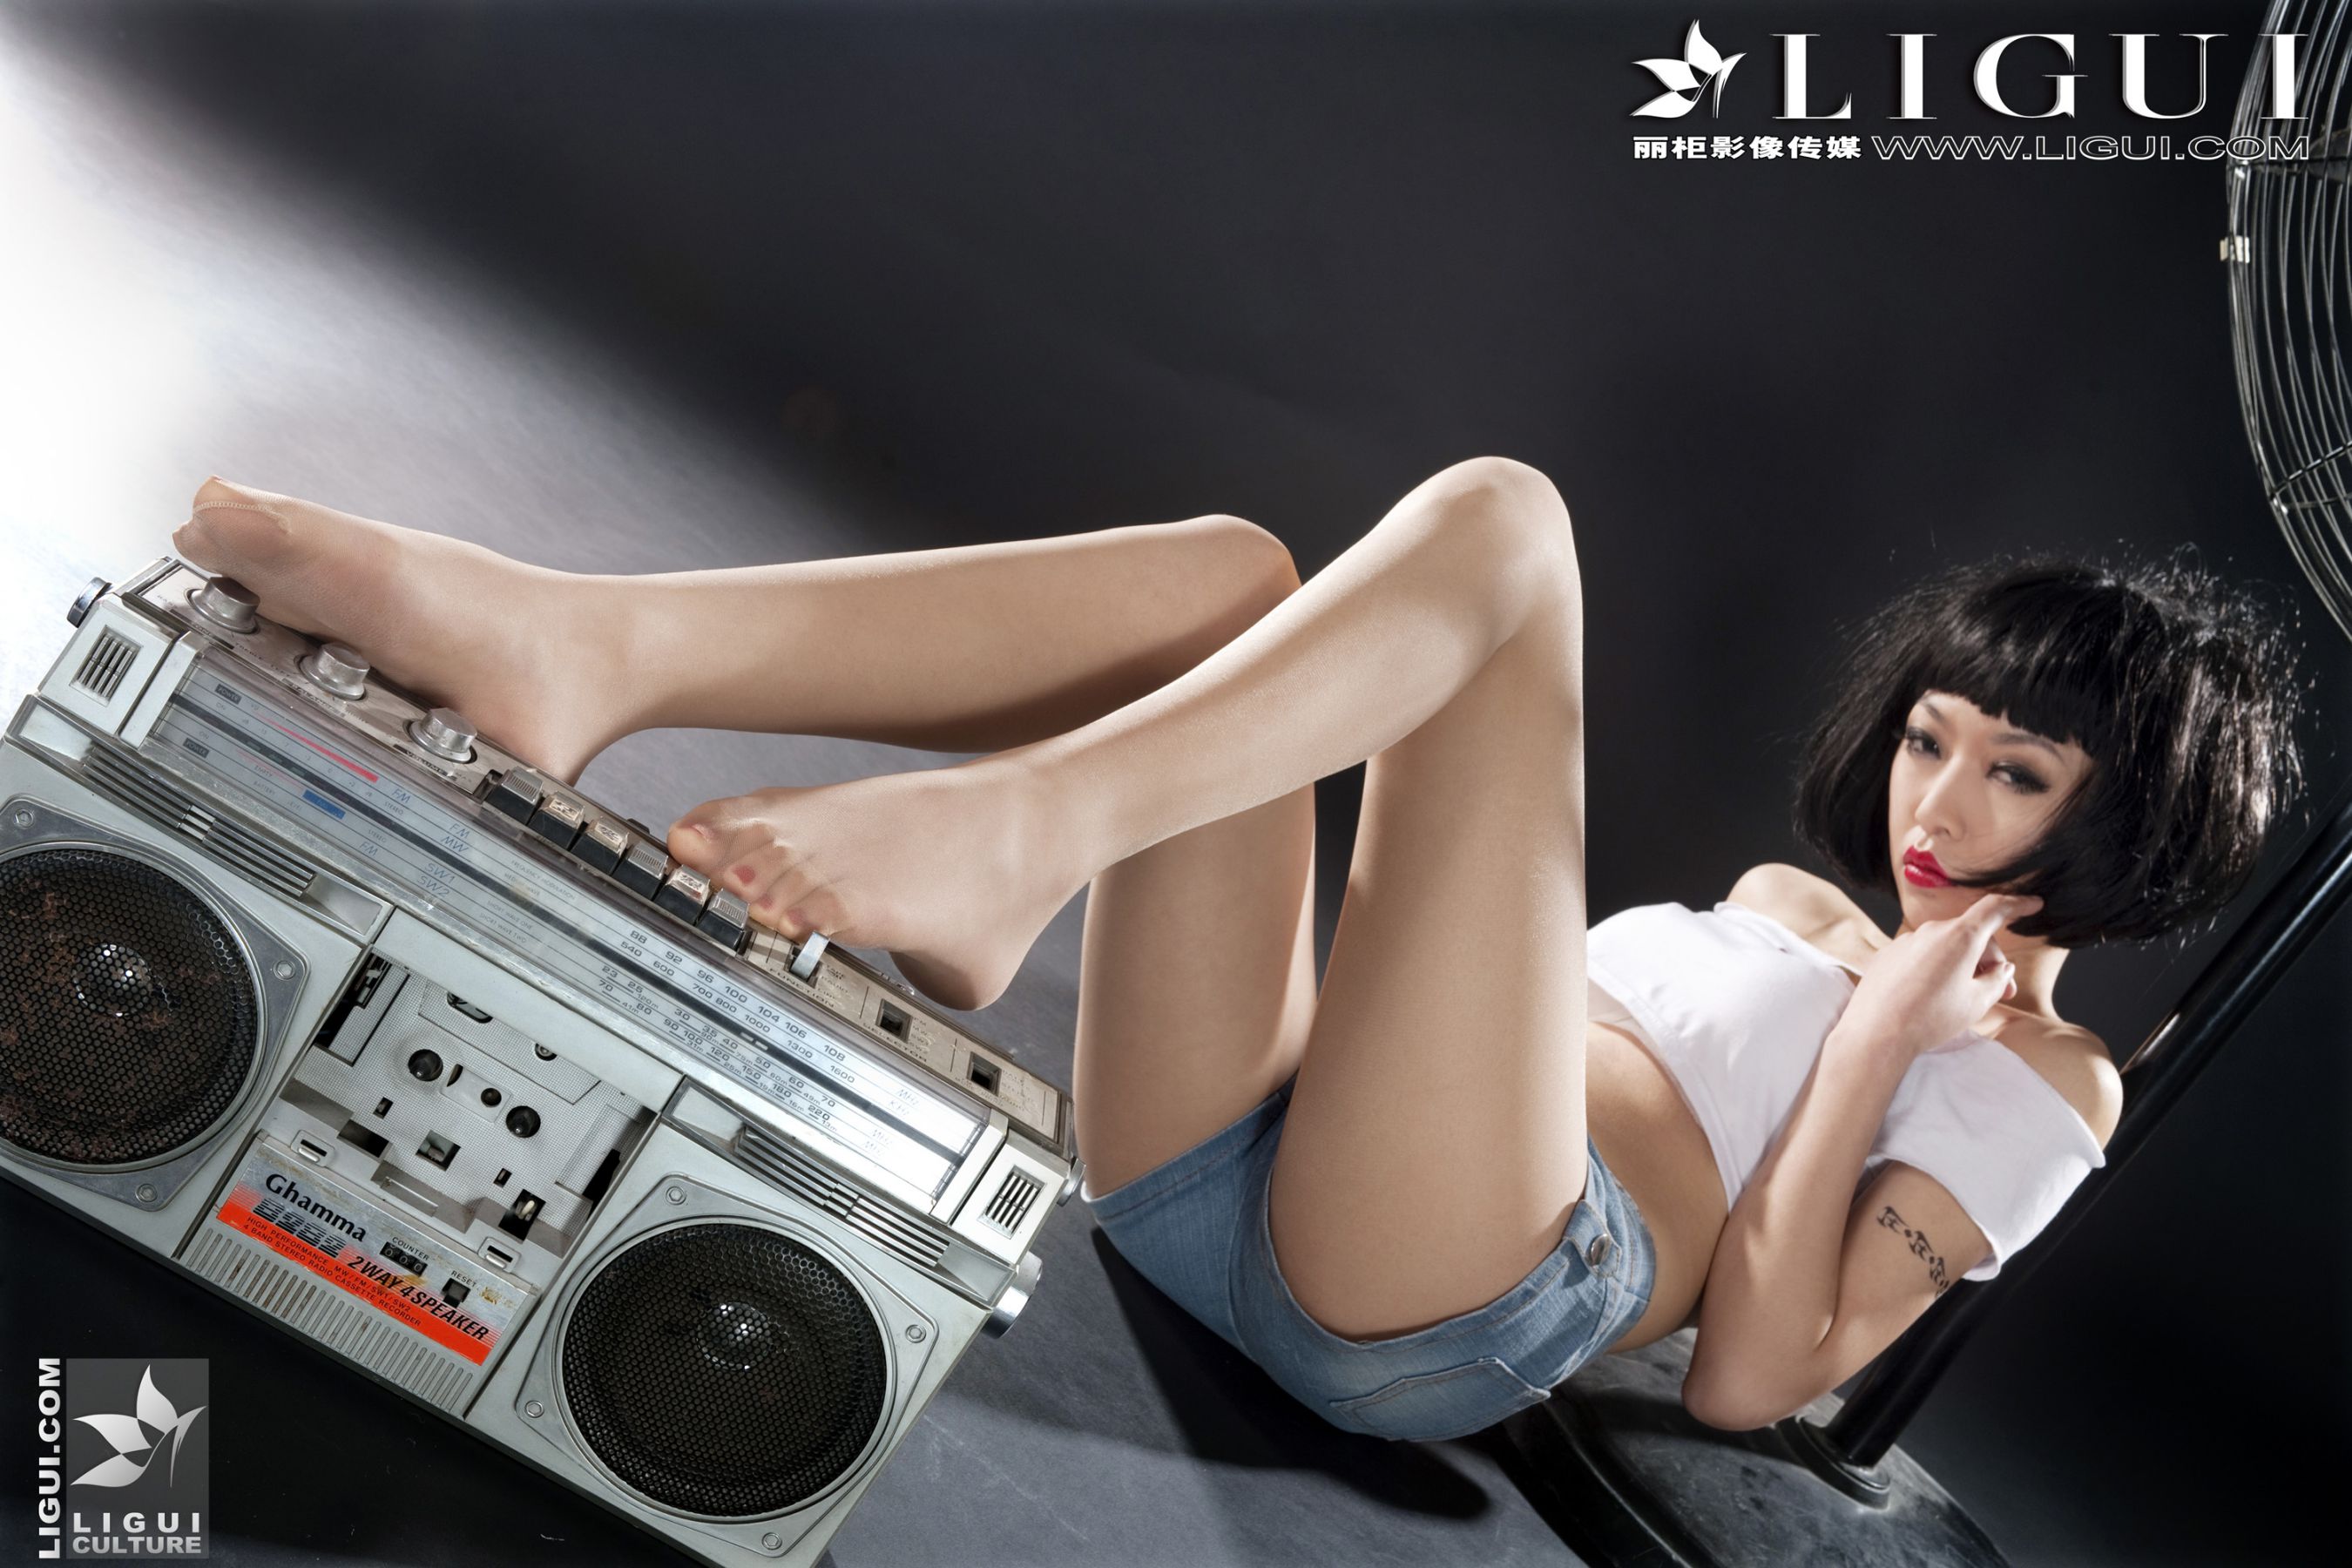 [丽柜贵足LiGui] Model Wenxin "Fashionable Denim Hot Pants Girl" Beautiful Legs and Silky Feet Photo Picture Page 30 No.2a71b9